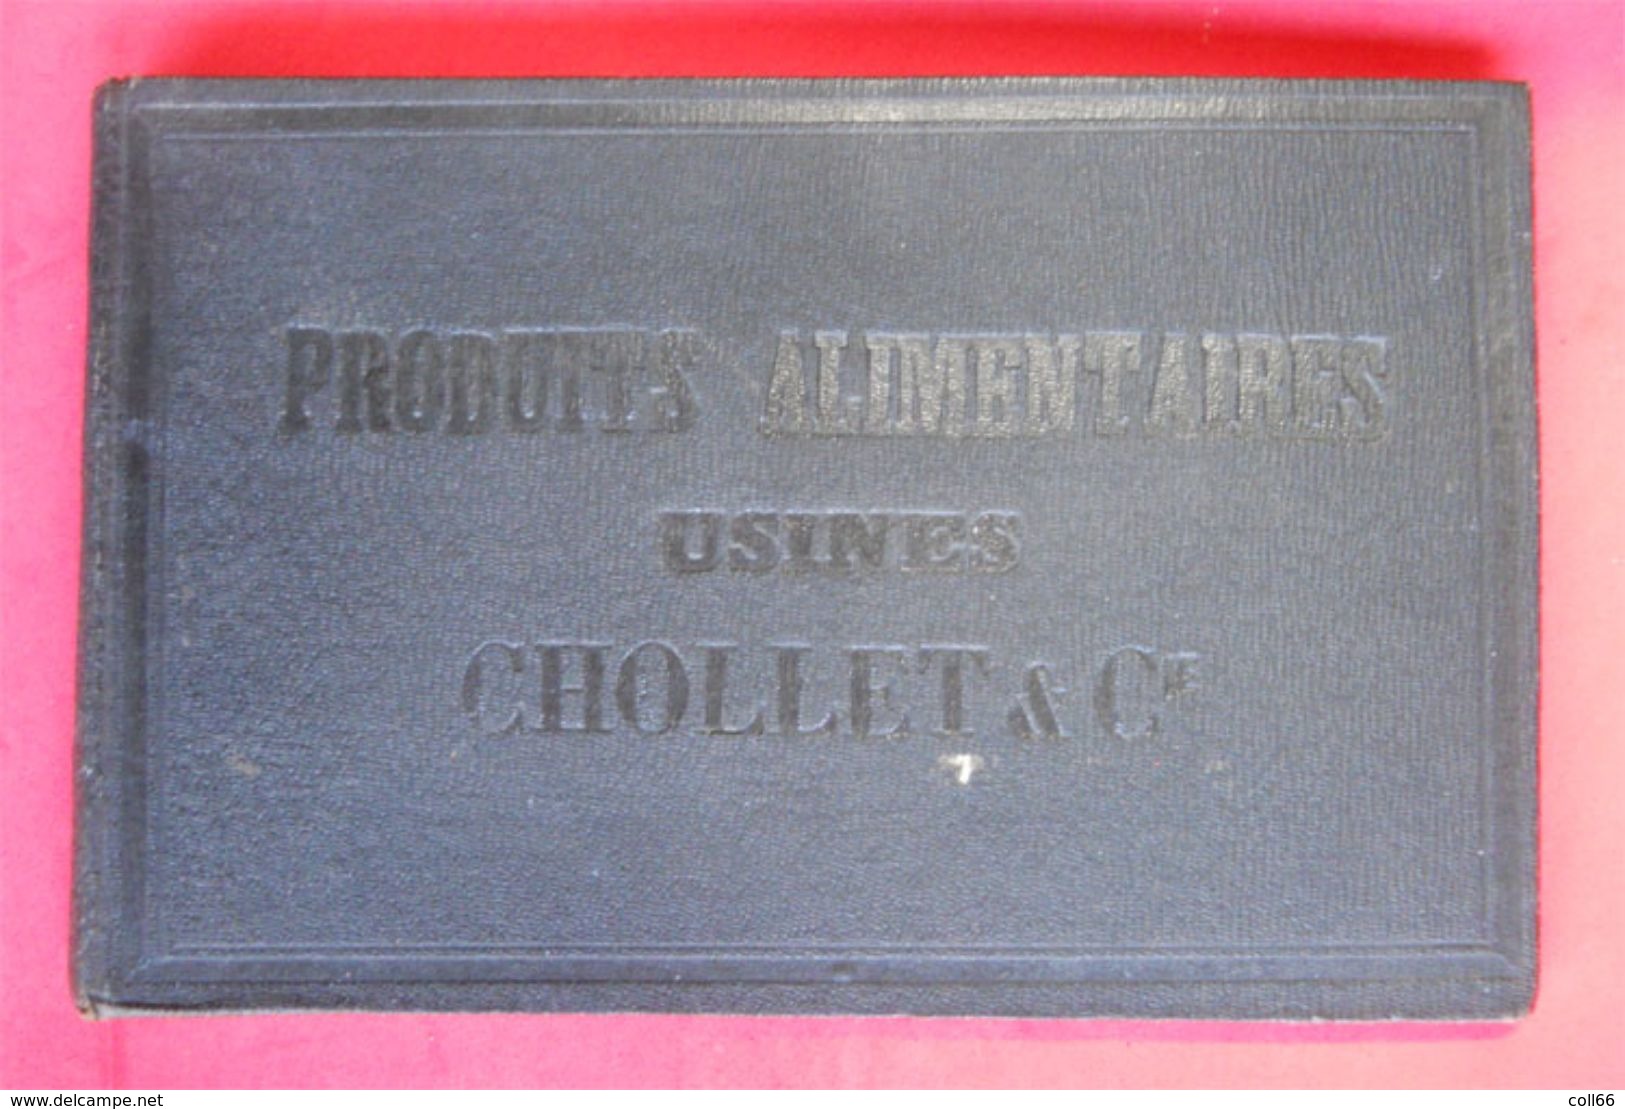 RARE Chocolat des Usines Chollet Catalogue de représentant Napoléon III Chocolate Representative Catalog Schokolade